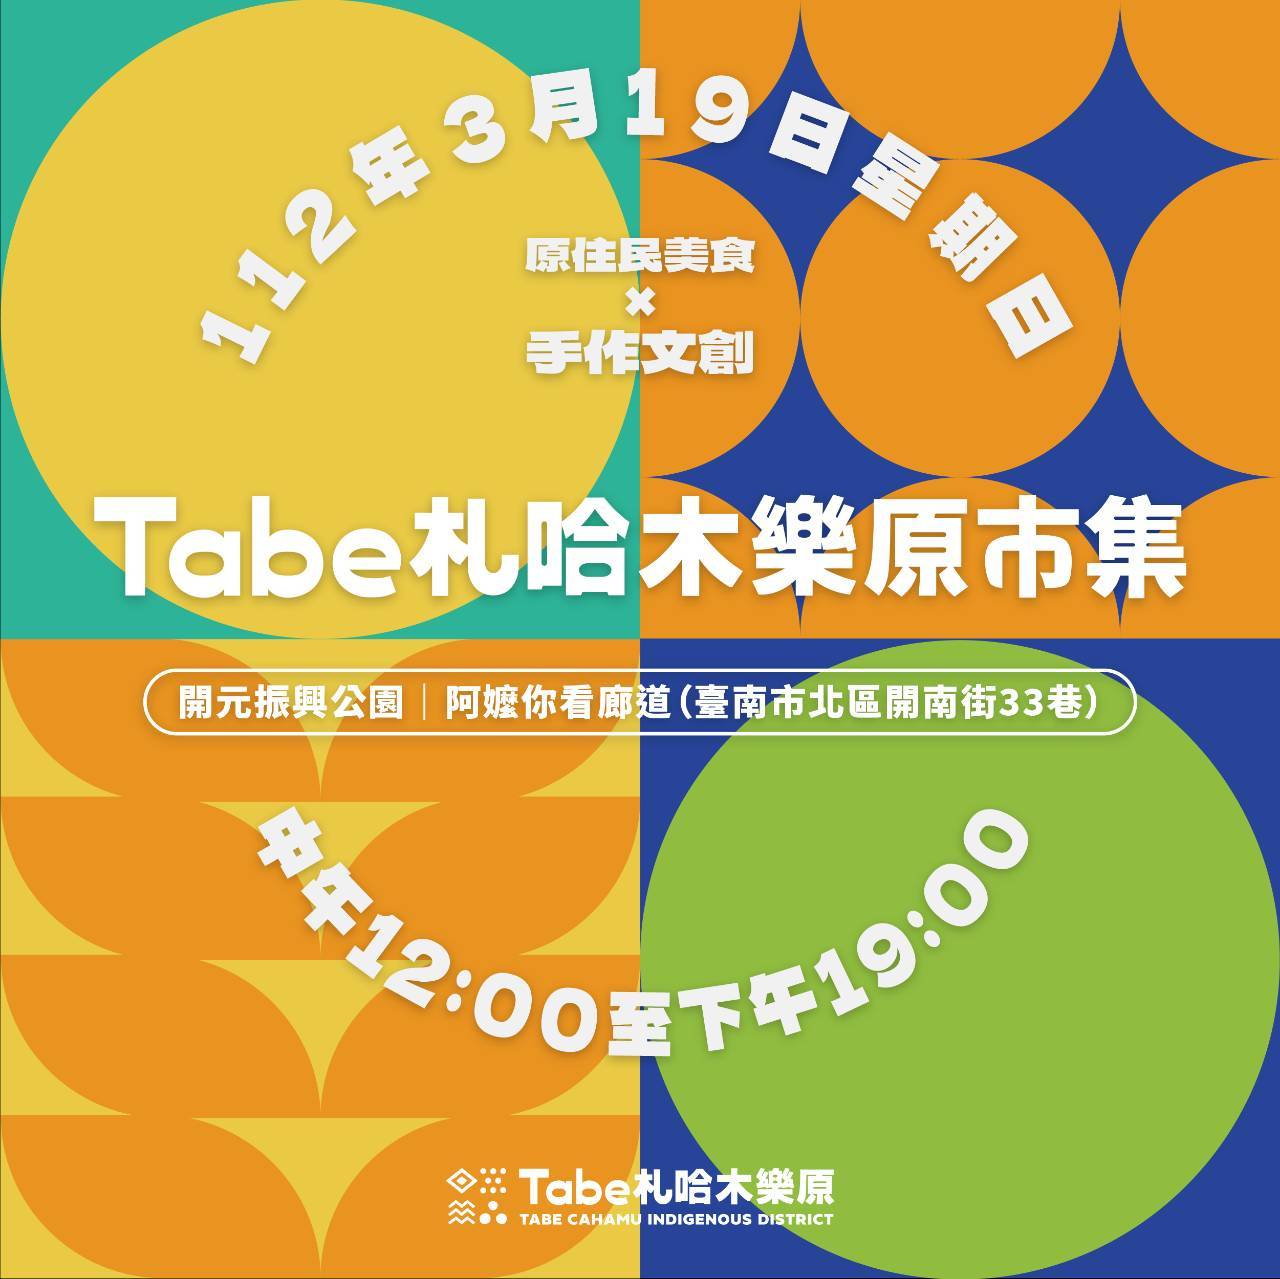 【台南活動】2023年台南3月份活動總整理，台南3月必去活動和景點都在這~